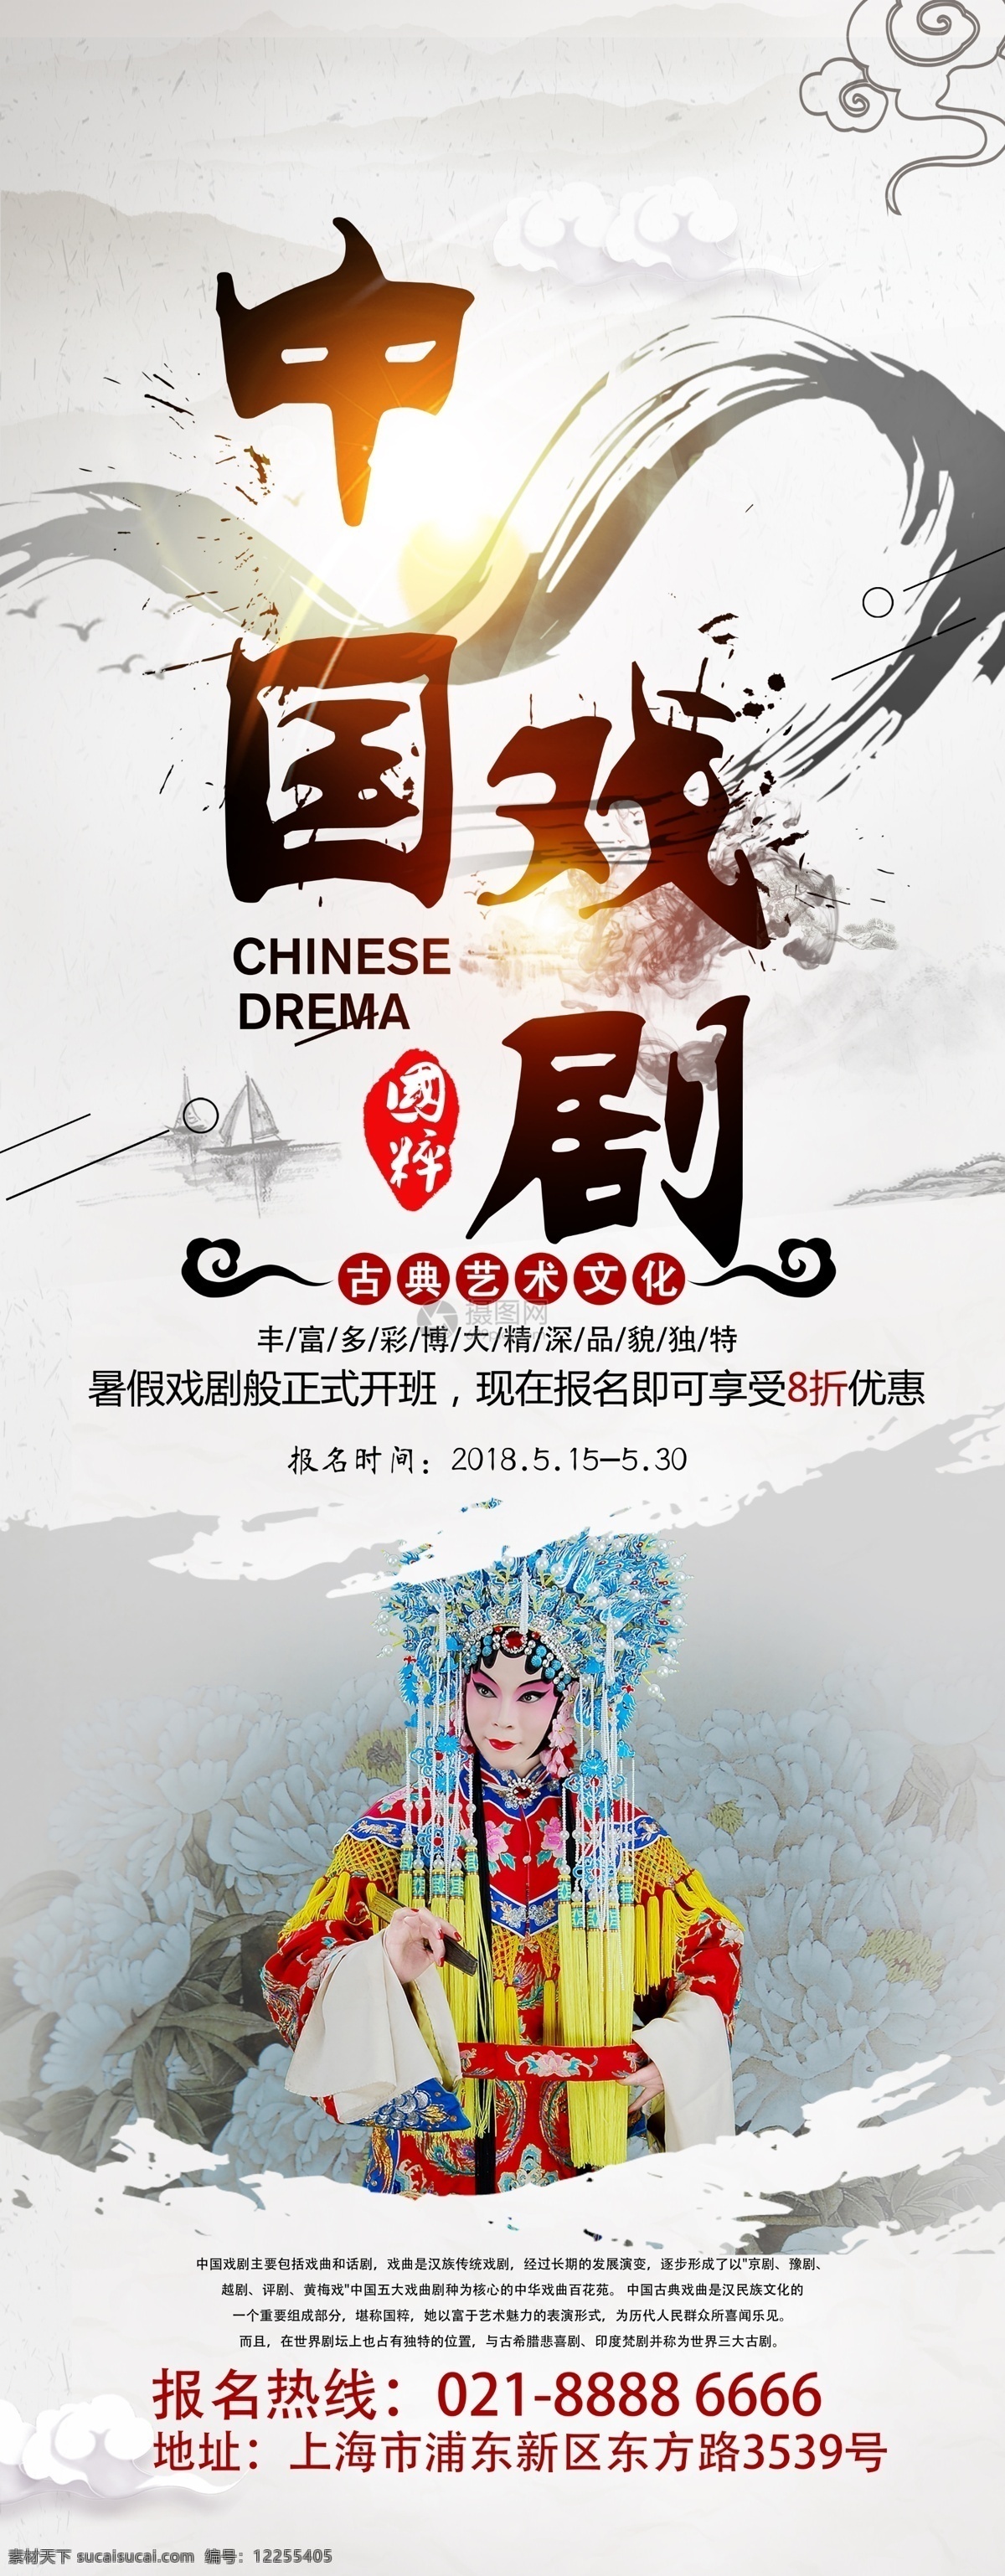 中国 戏剧 班 招生 宣传 展架 展架设计 传统文化 中国文化 易拉宝 非遗文化 非物质文化 遗产